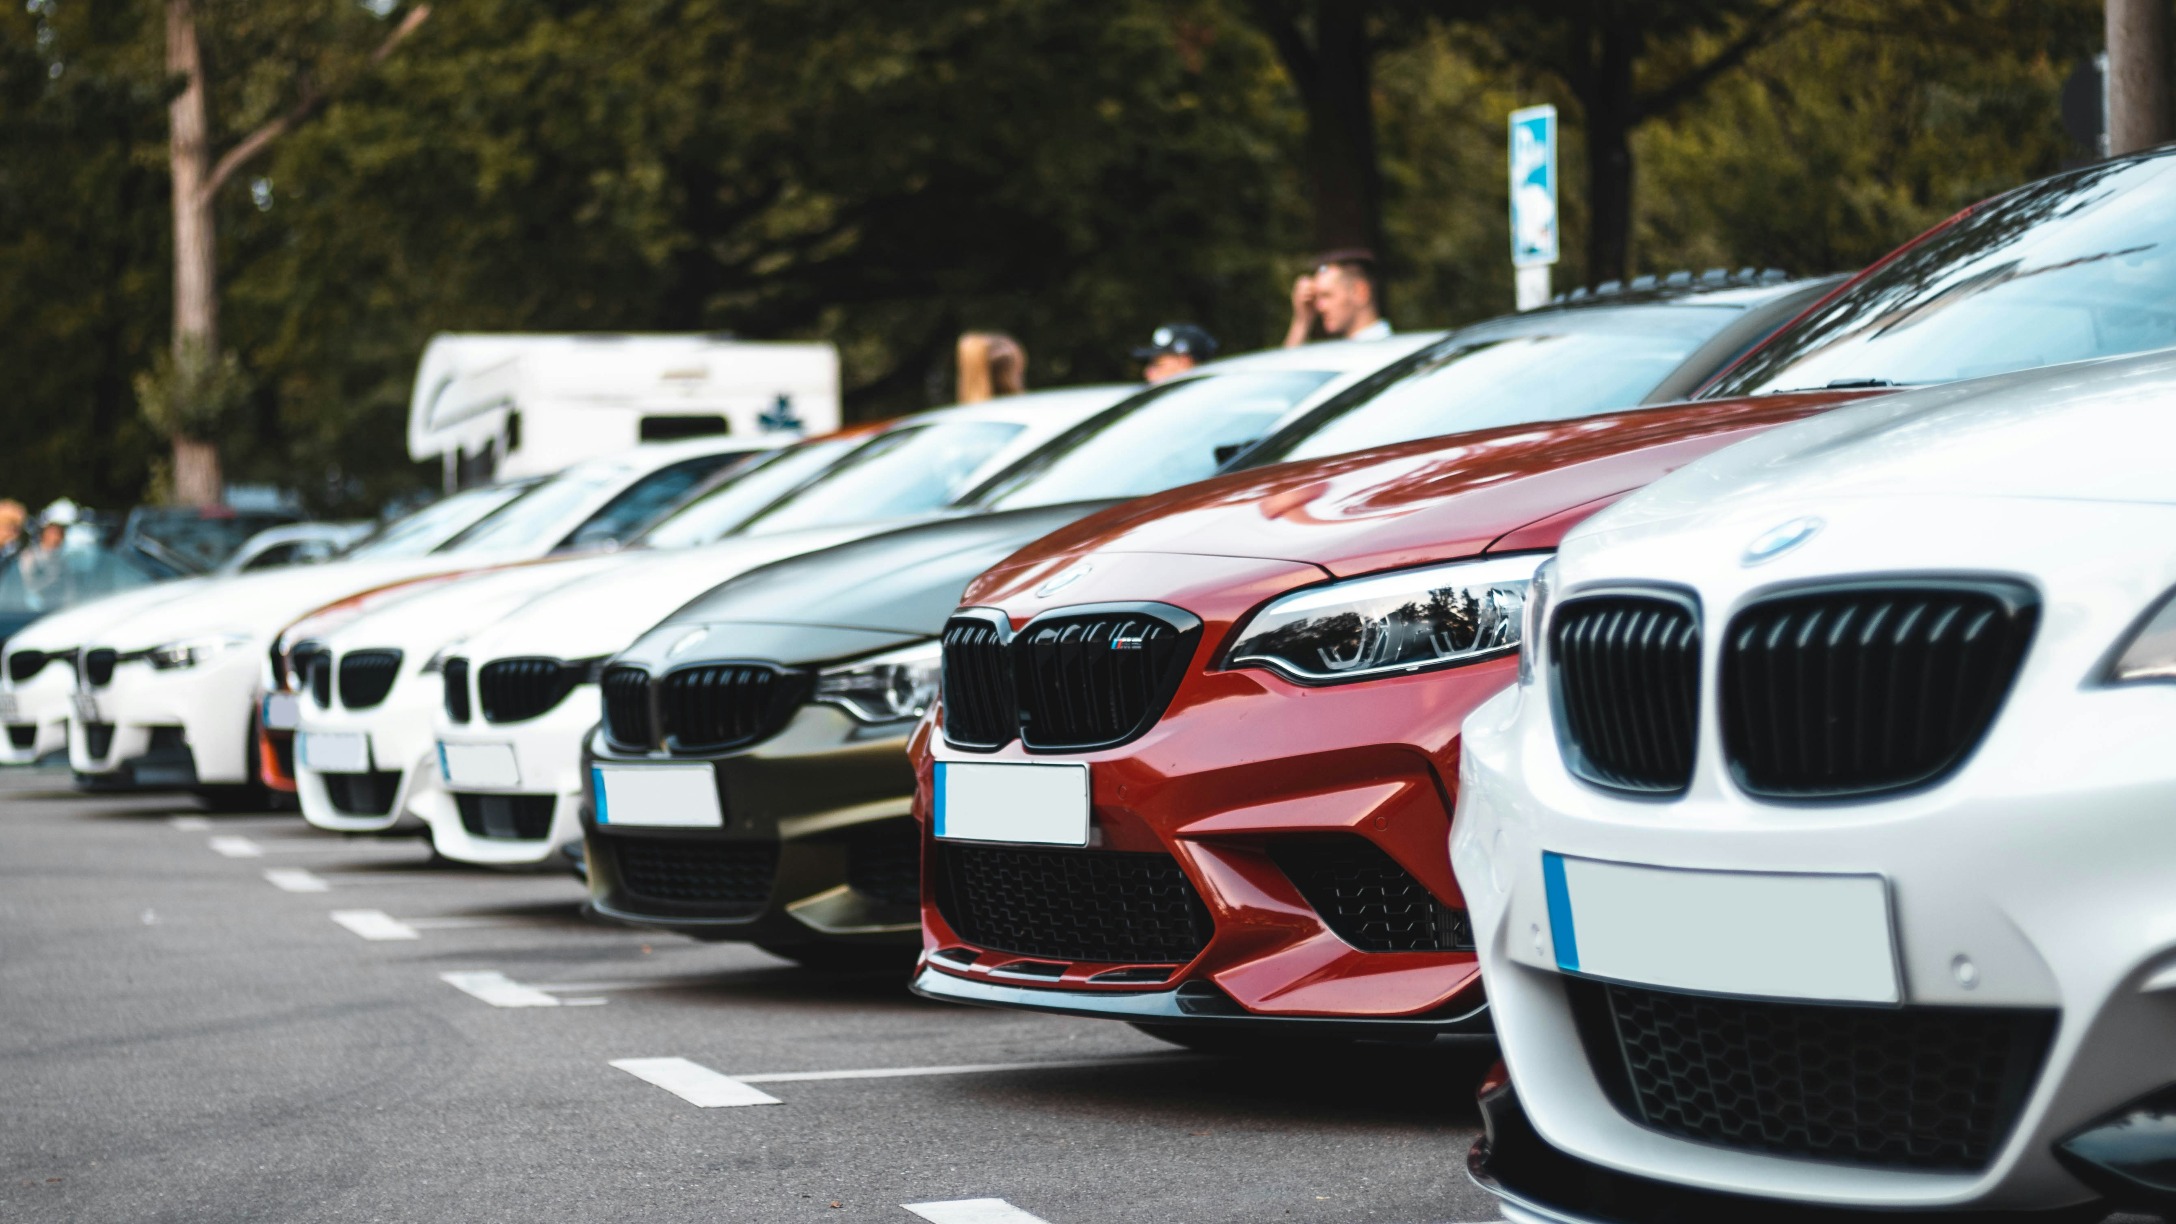 Serie di auto di diversi colori e marchi parcheggiate in un parcheggio e fotografate lateralmente.